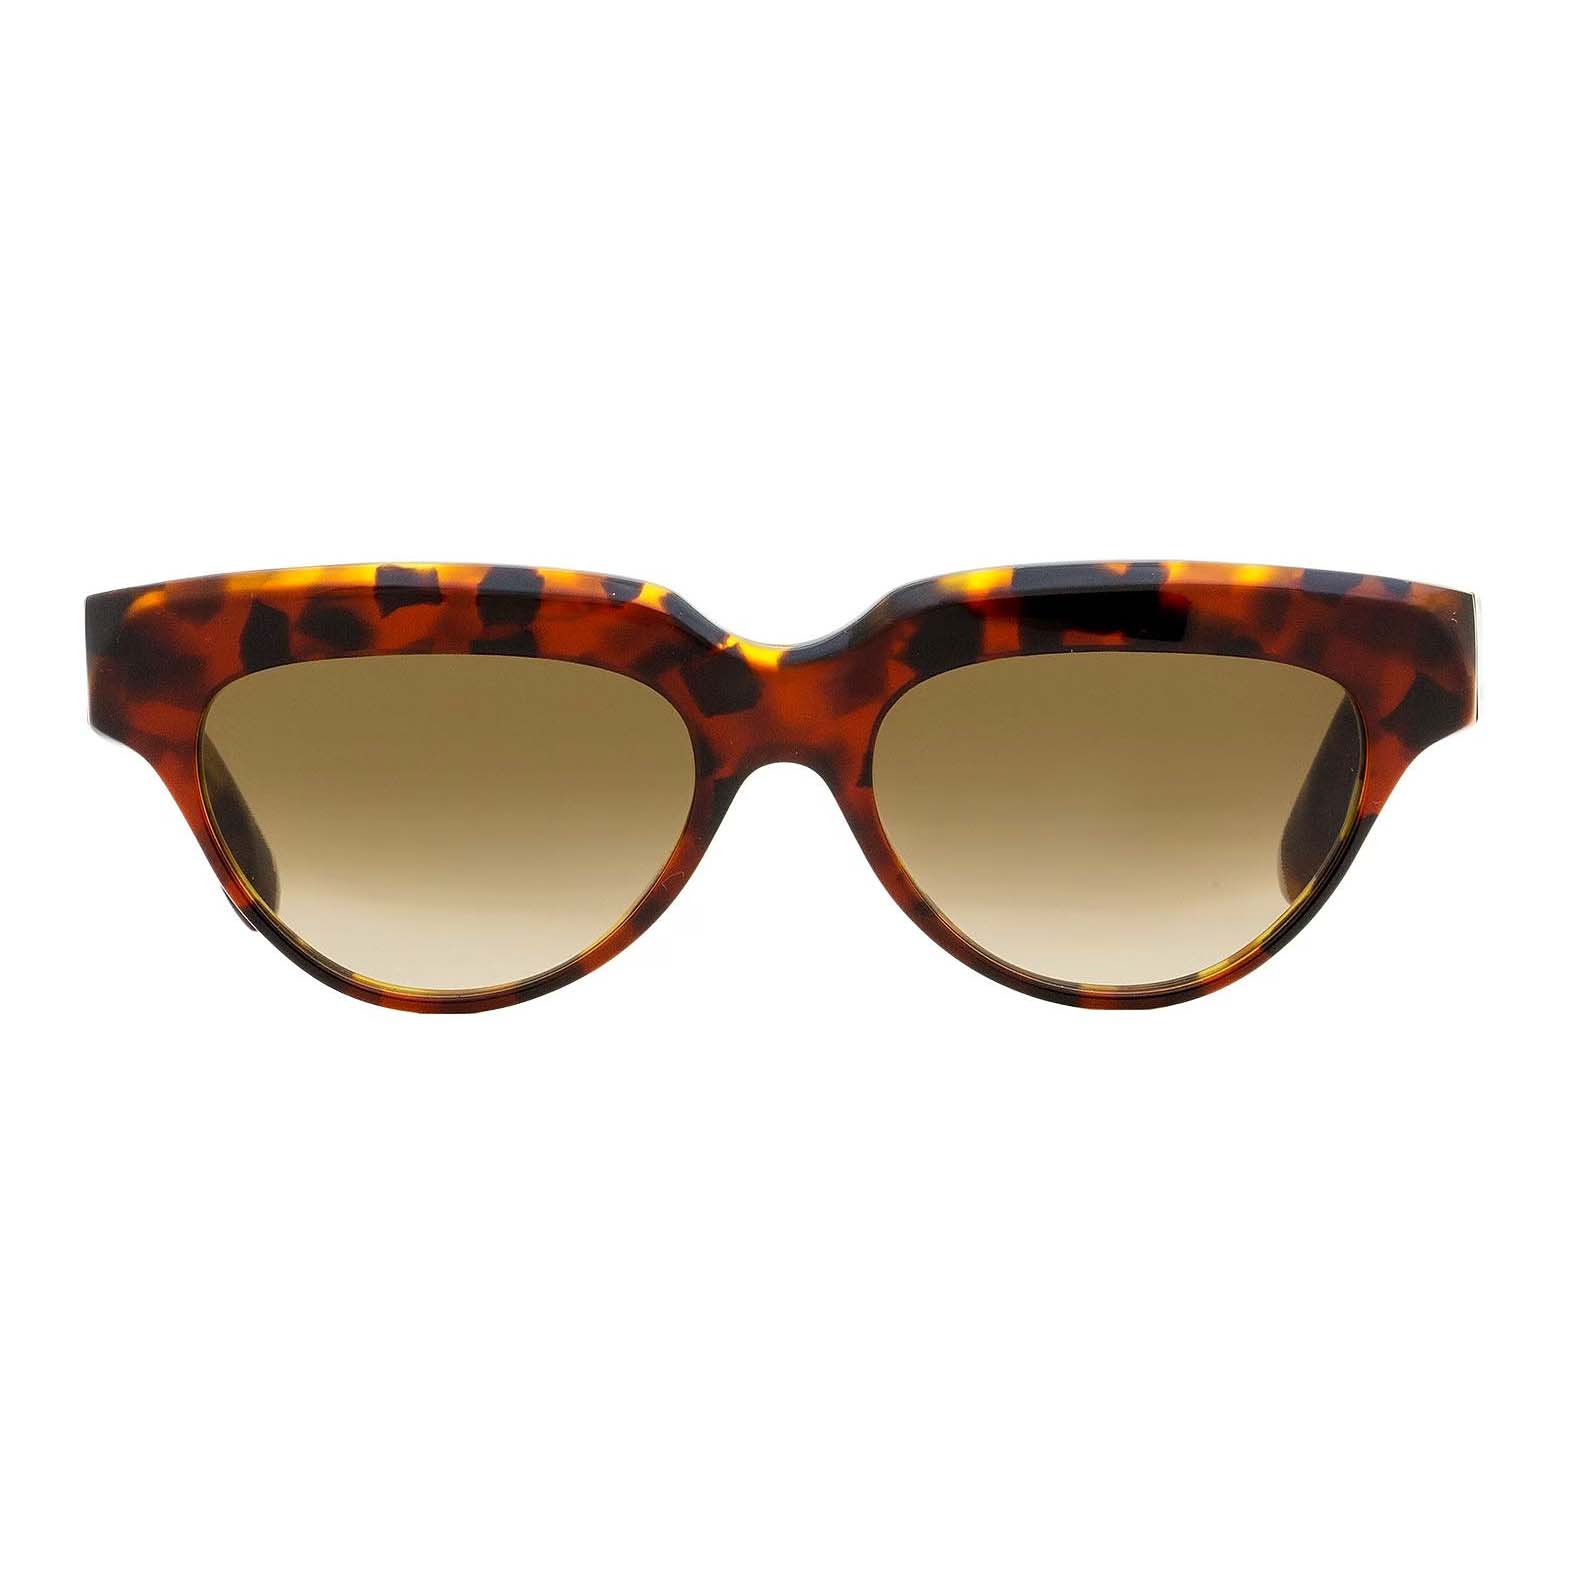 Солнцезащитные очки Victoria Beckham Cateye VB602S, красный/мультиколор солнцезащитные очки tropical кошачий глаз оправа пластик градиентные для женщин черный